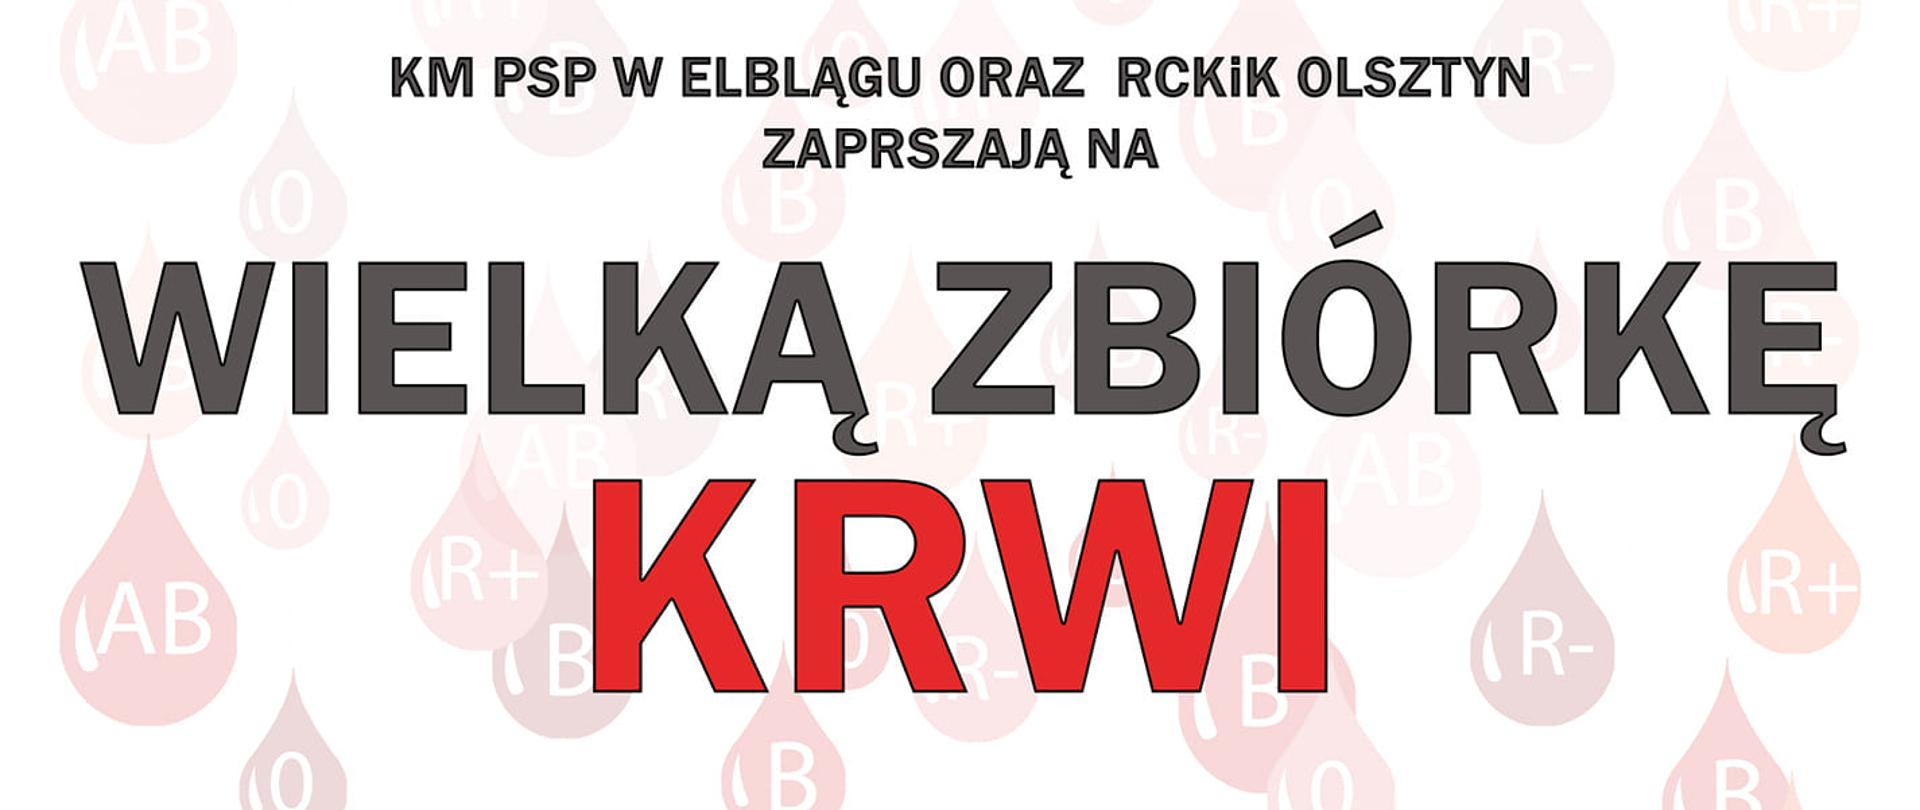 Plakat promujący akcję zbiórki krwi w Pasłęku 4 wrześnie 2021 roku o godzinie 8:00, Obraz wzbogacony lokiem czerwonej krwinki i logiem Państwowej Straży Pożarnej.